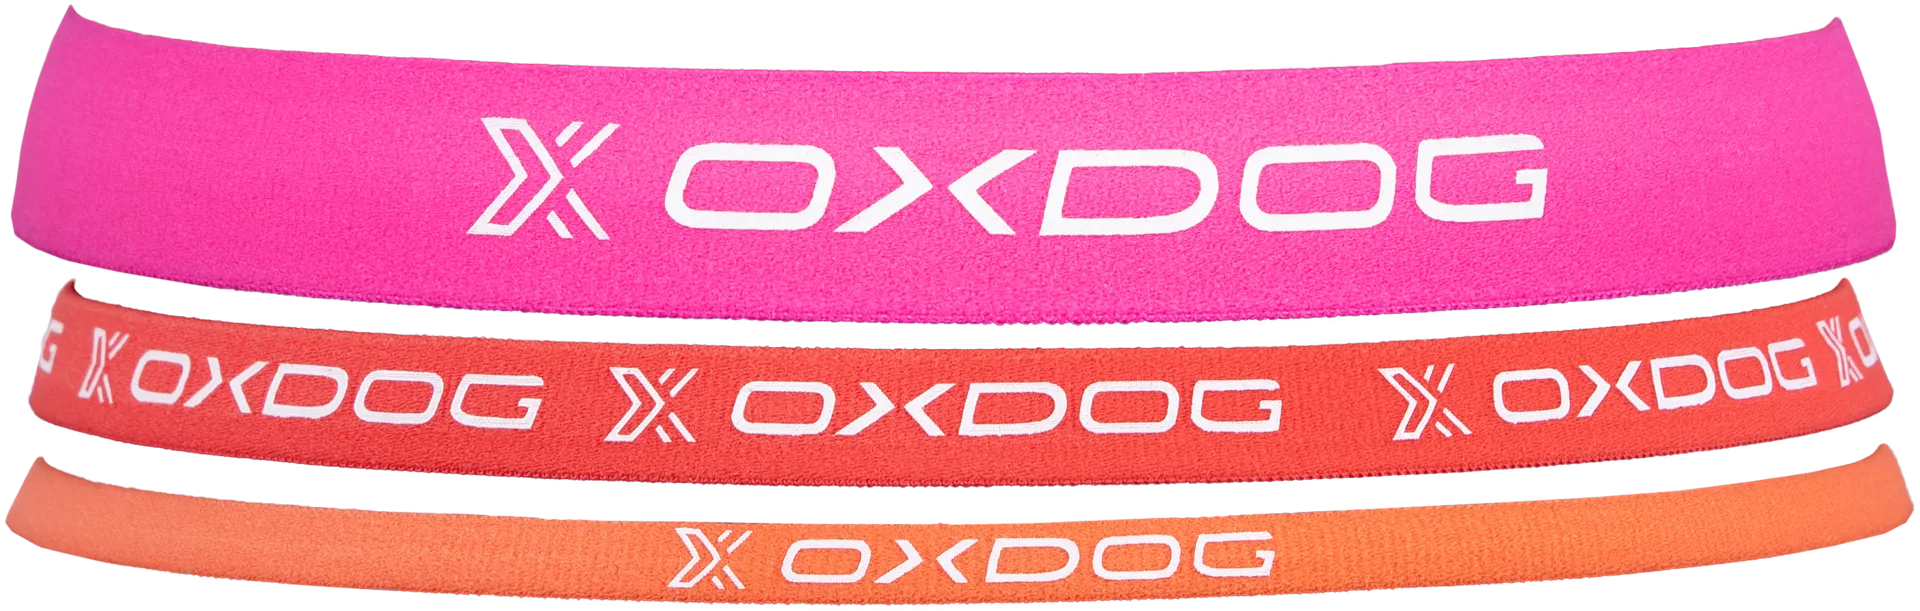 Oxdog Process päänauha 3kpl pinkki/punainen/oranssi